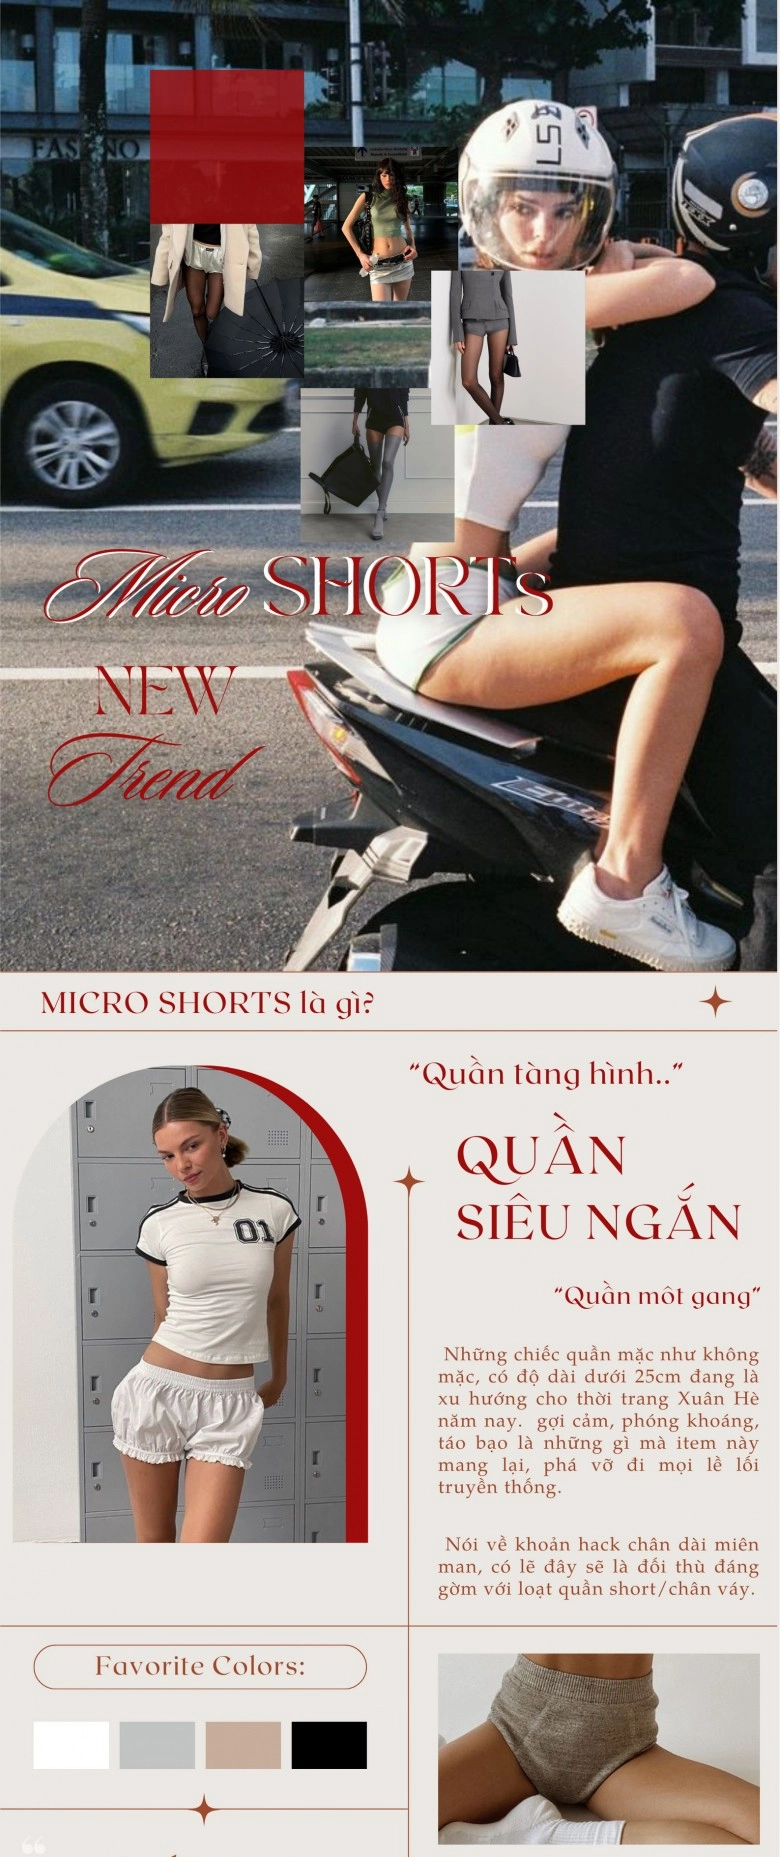 Trào lưu càng ngắn càng đẹp mang tên micro shorts nàng cập nhật để hack chân thon dài - 2